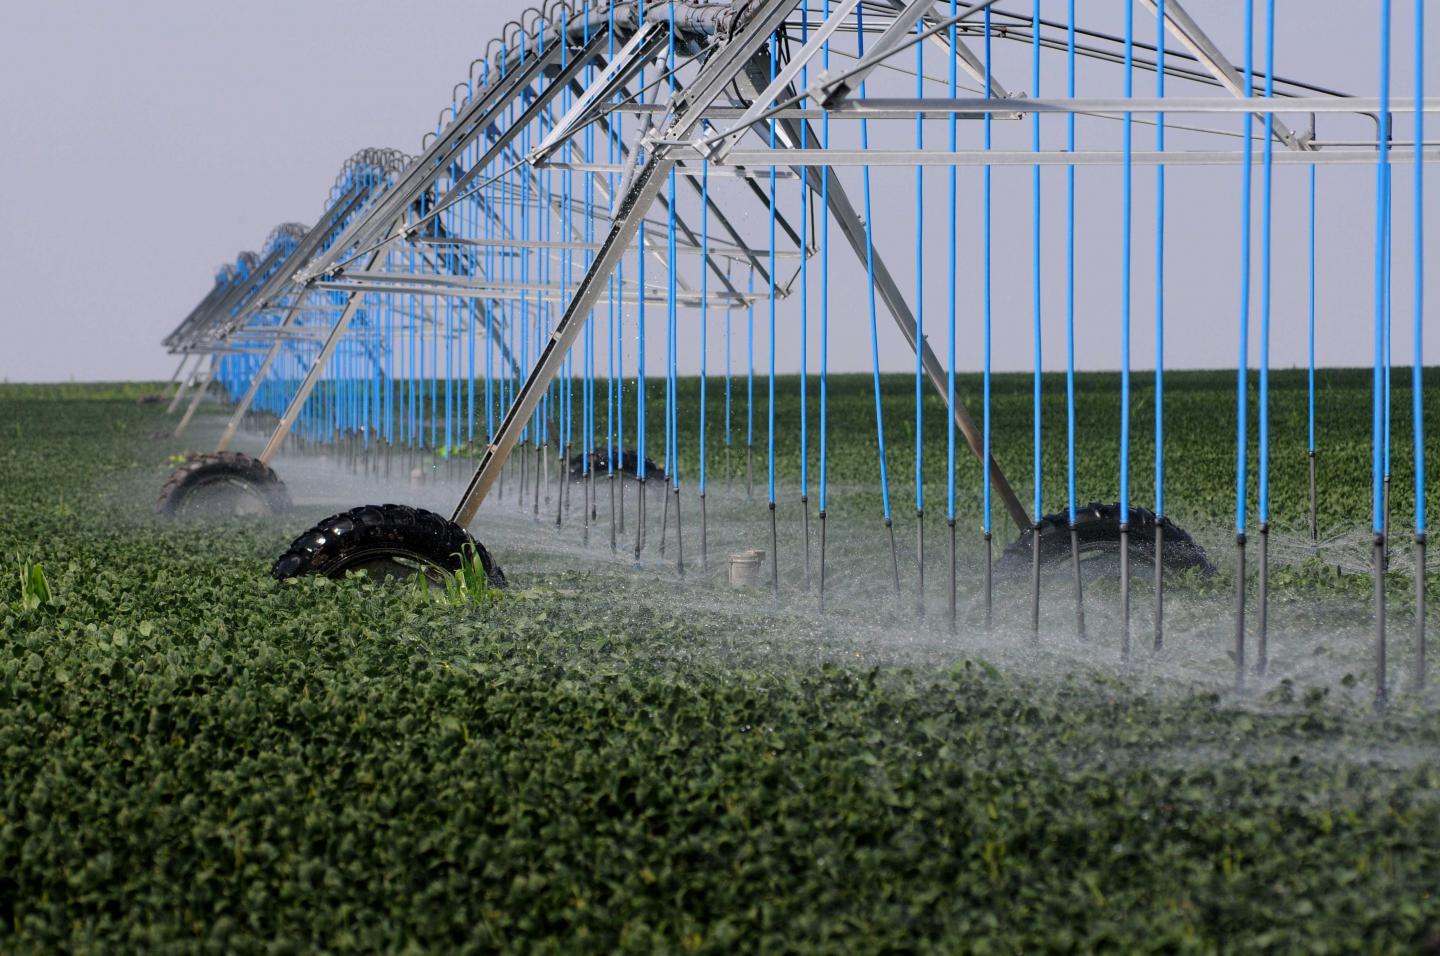 Crop Watering